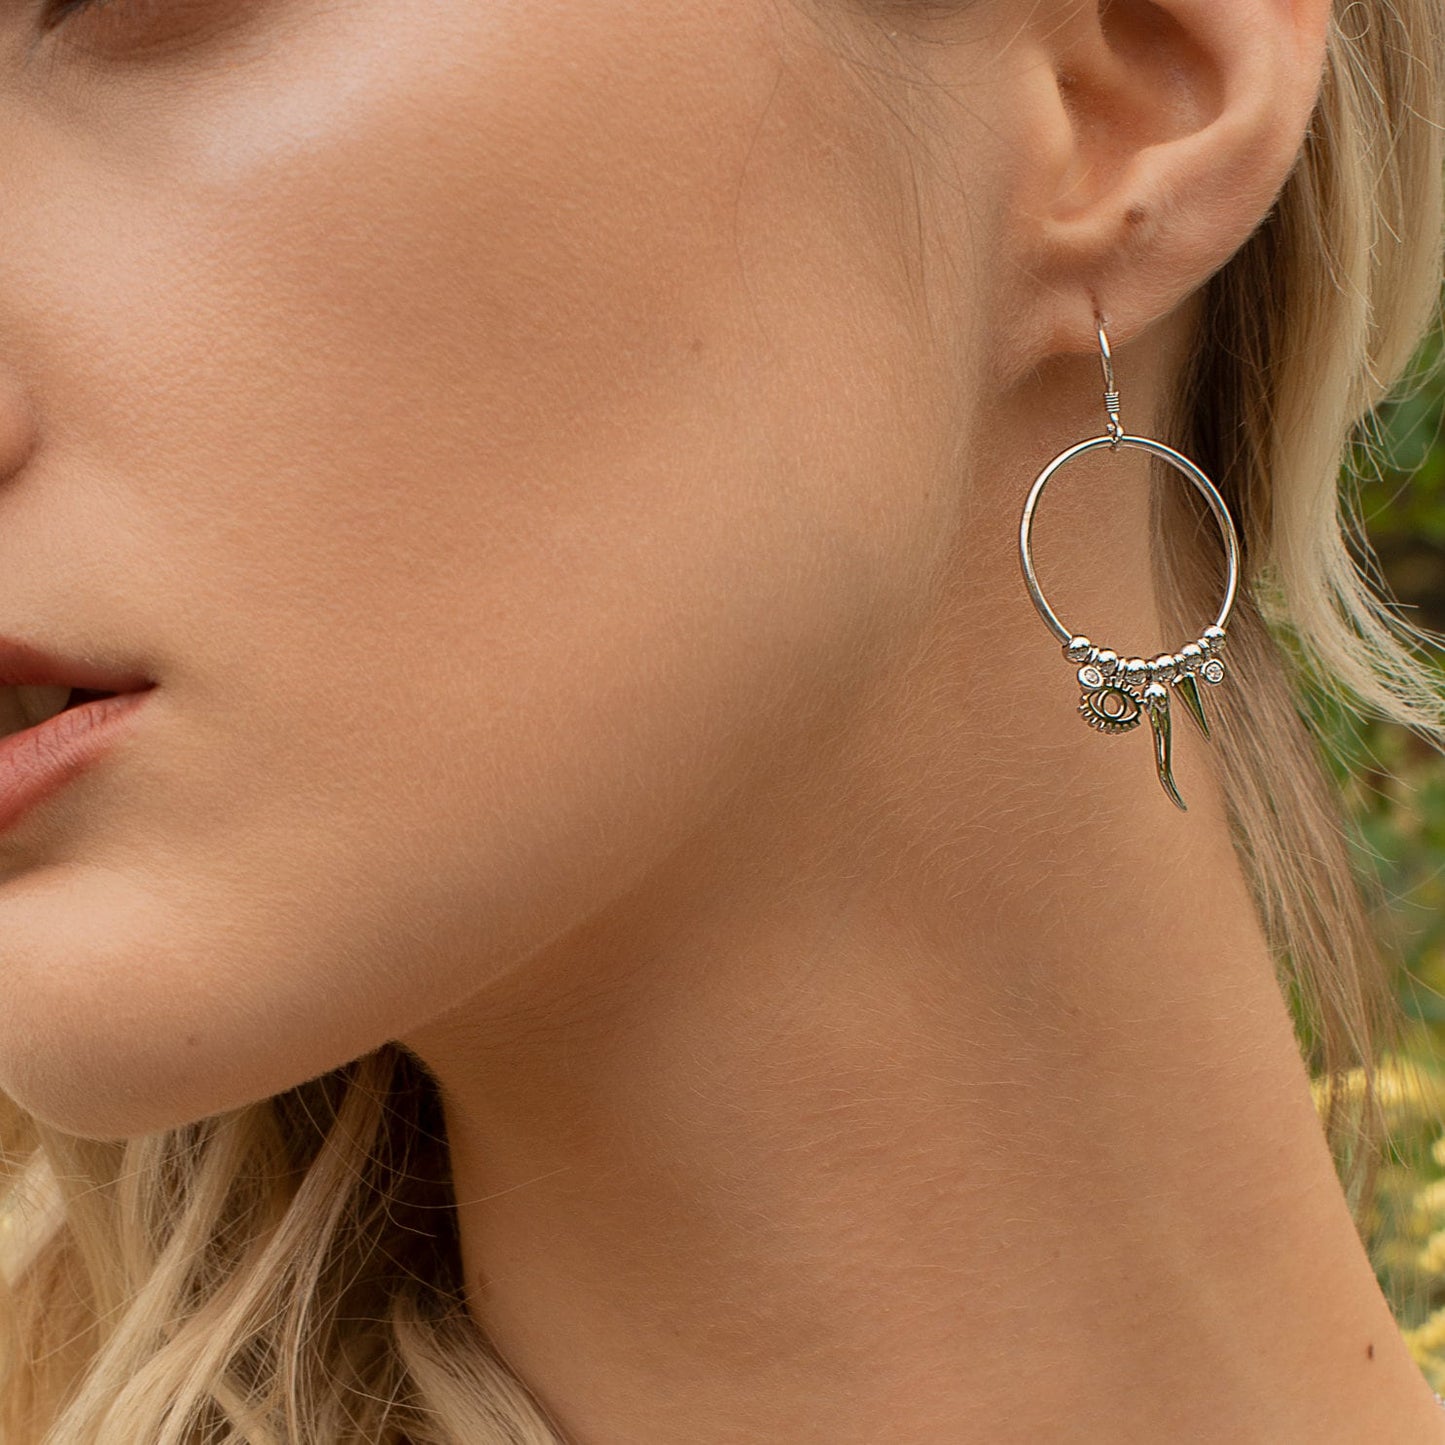 French wire hook earrings, large round unique drop earrings, evil eye boho earrings, festival earrings